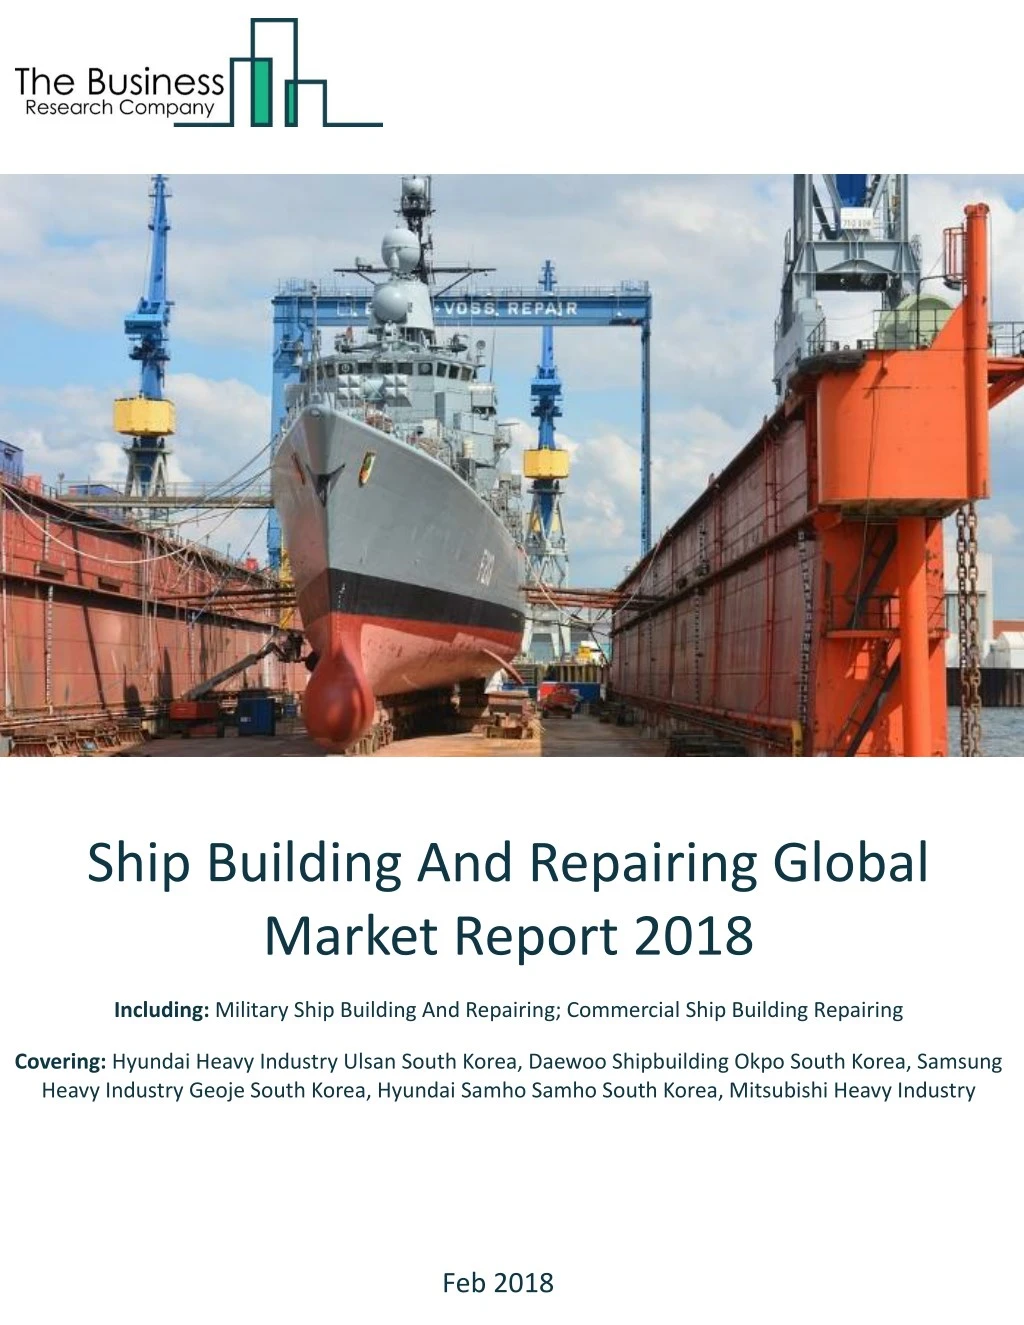 ship building and repairing global market report